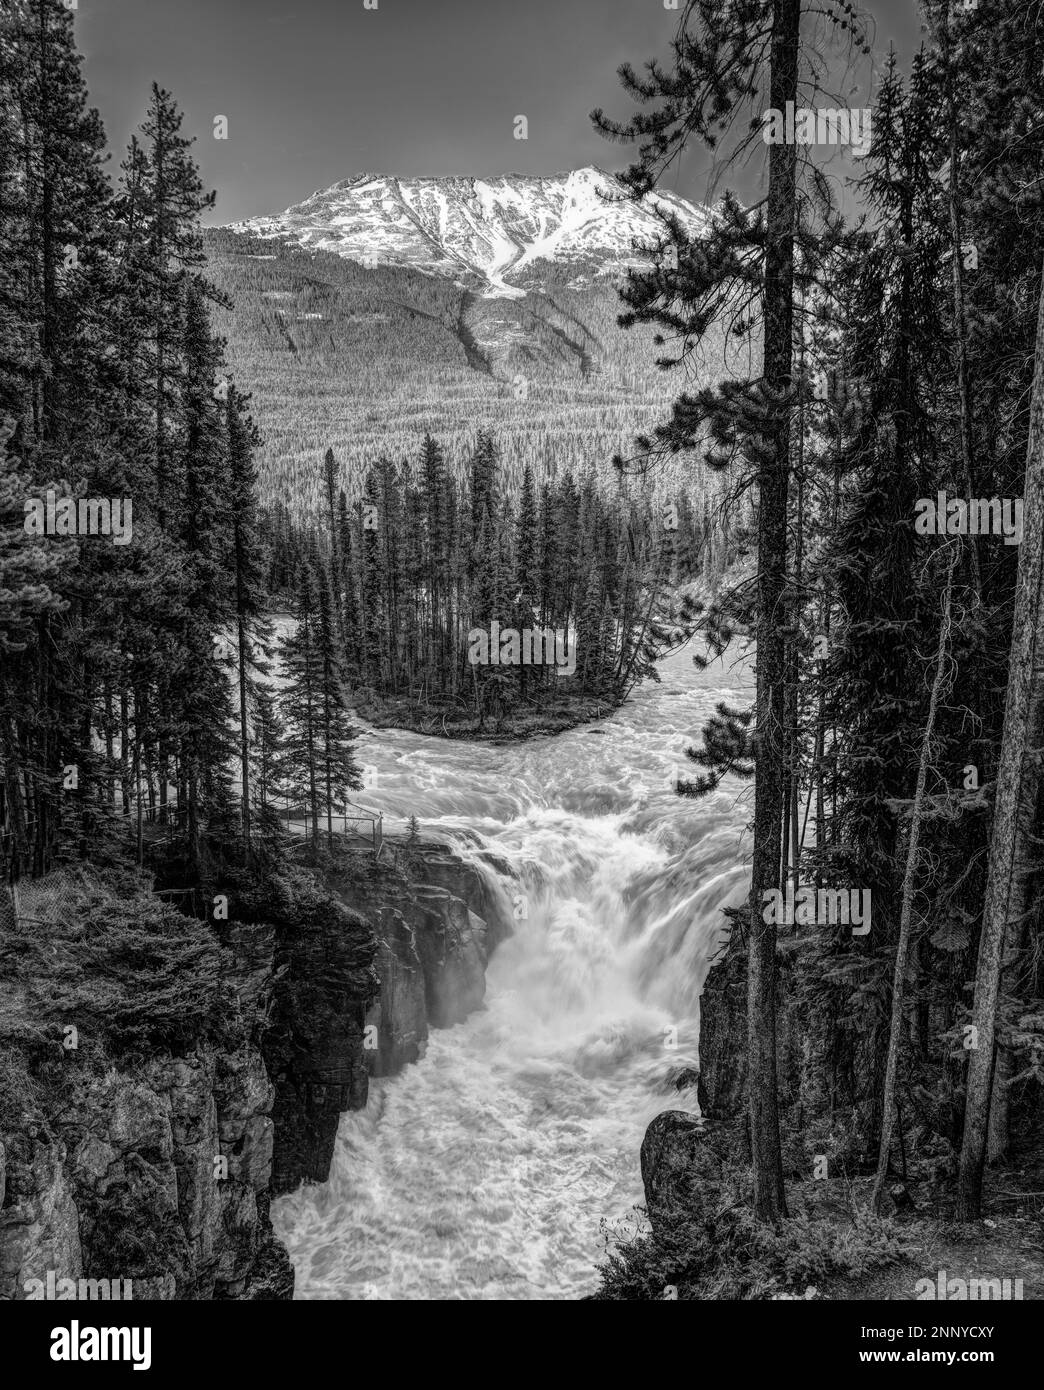 Paysage avec chute d'eau, forêt et montagne, chutes Sunwapta, rivière Sunwapta, Alberta, Canada Banque D'Images